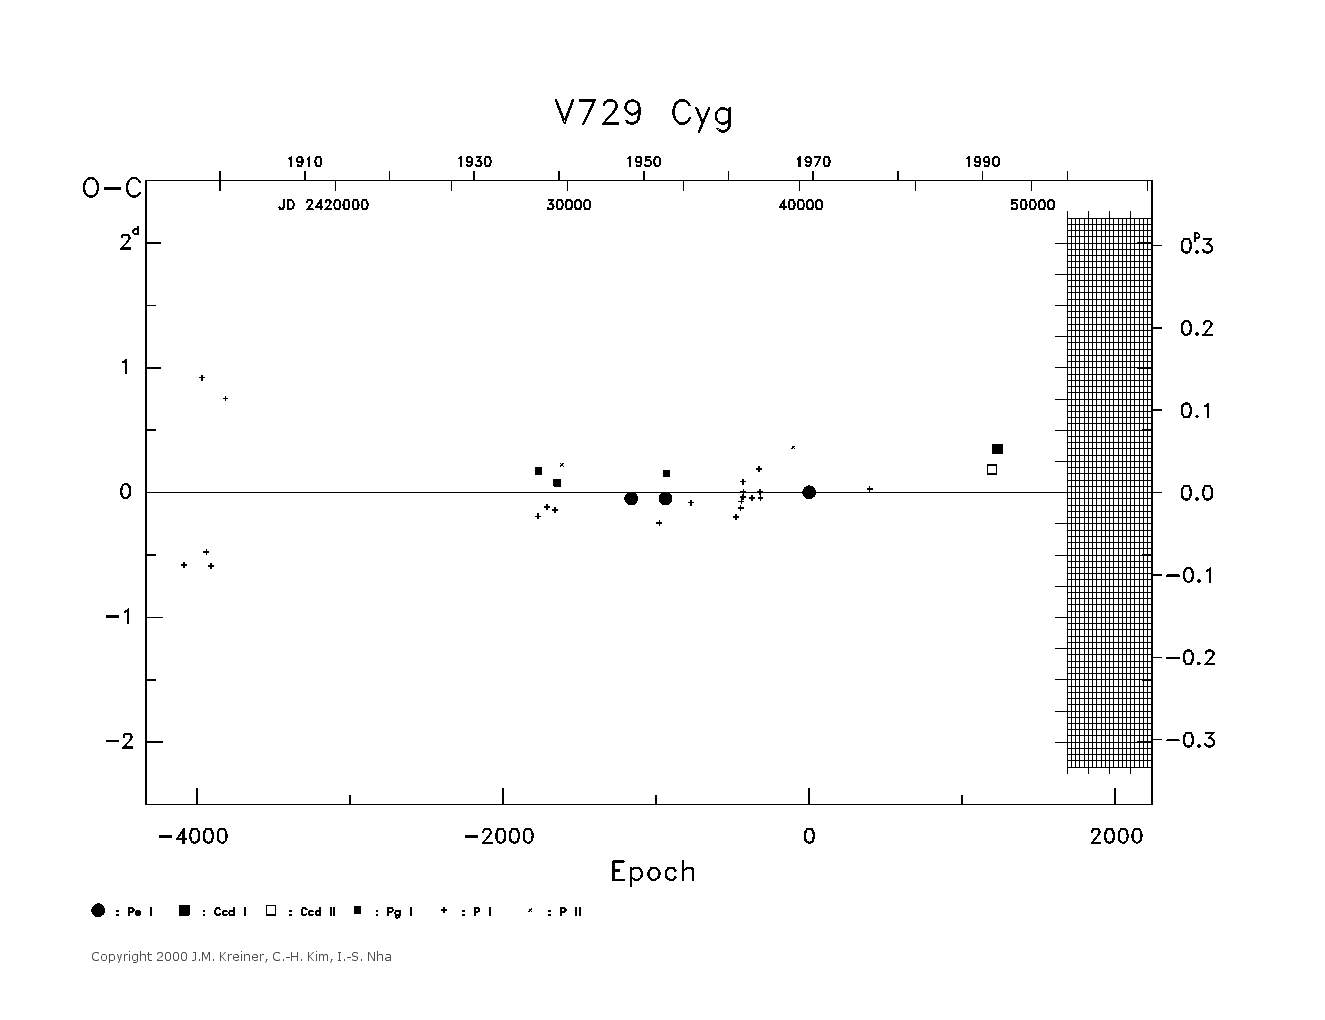 [IMAGE: large V729 CYG O-C diagram]